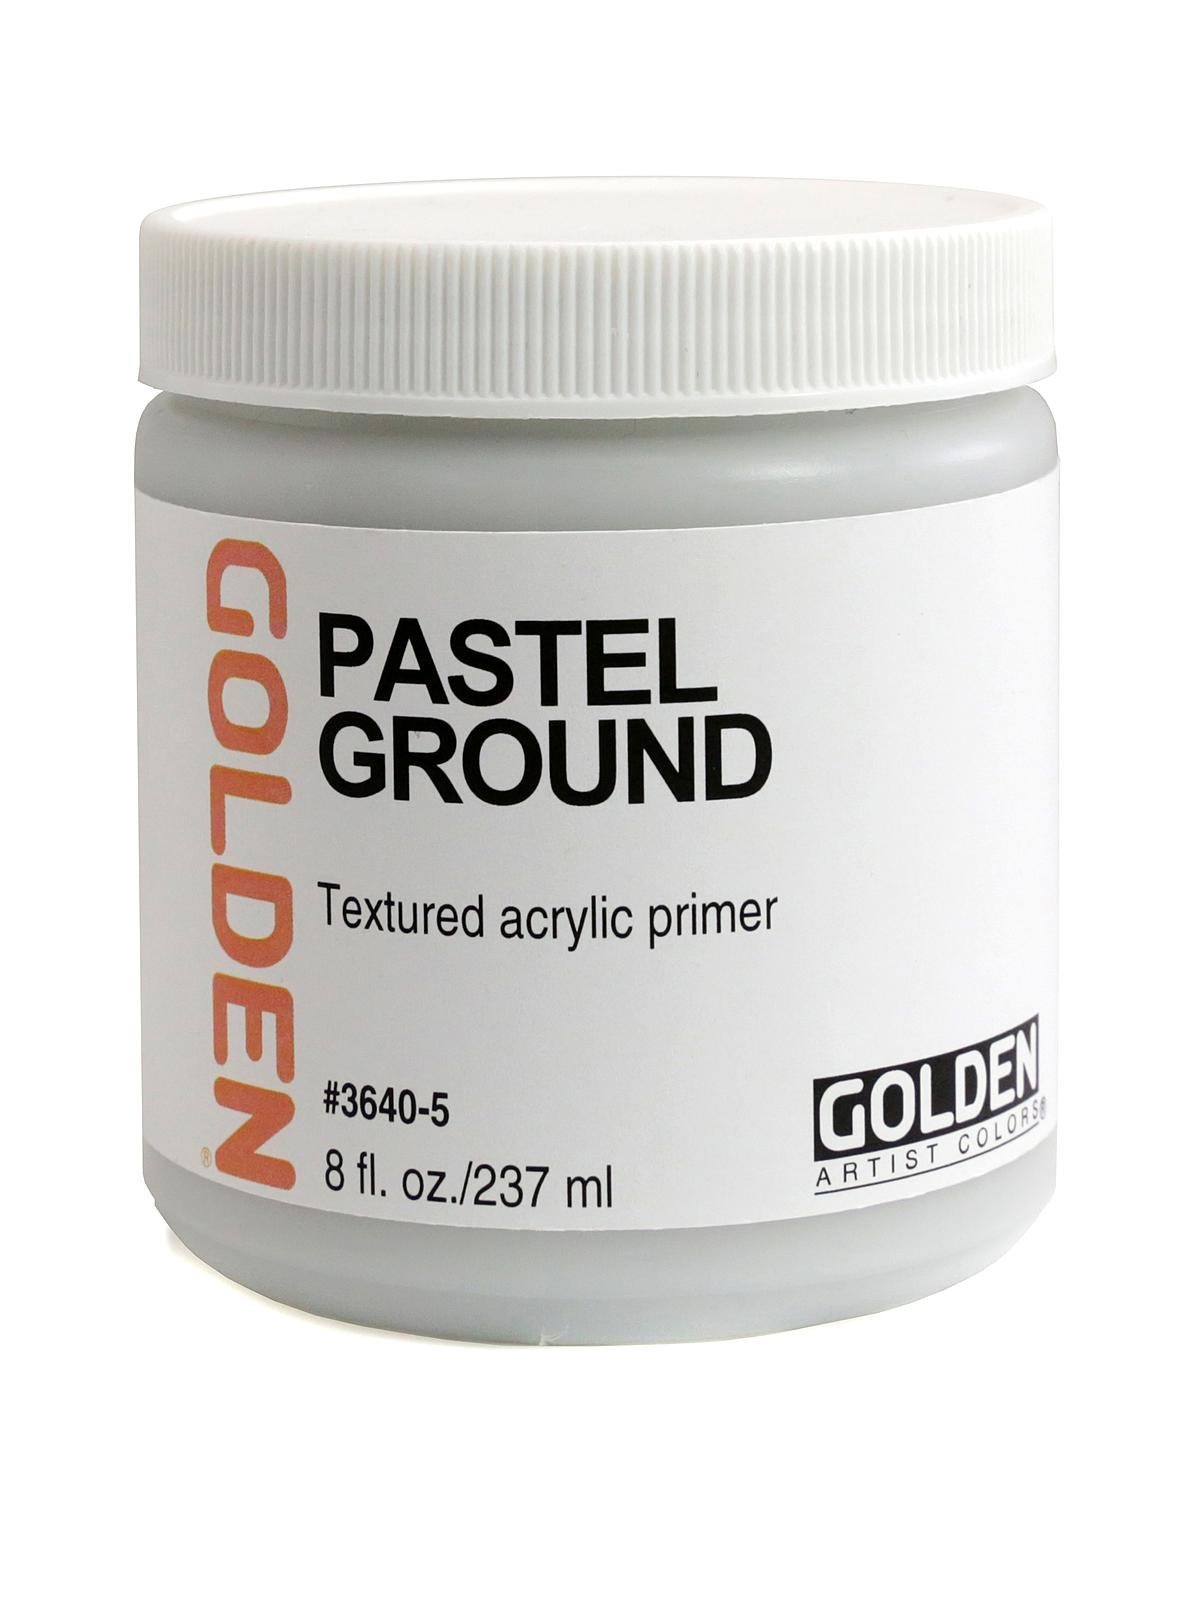 Golden - Pastels Ground